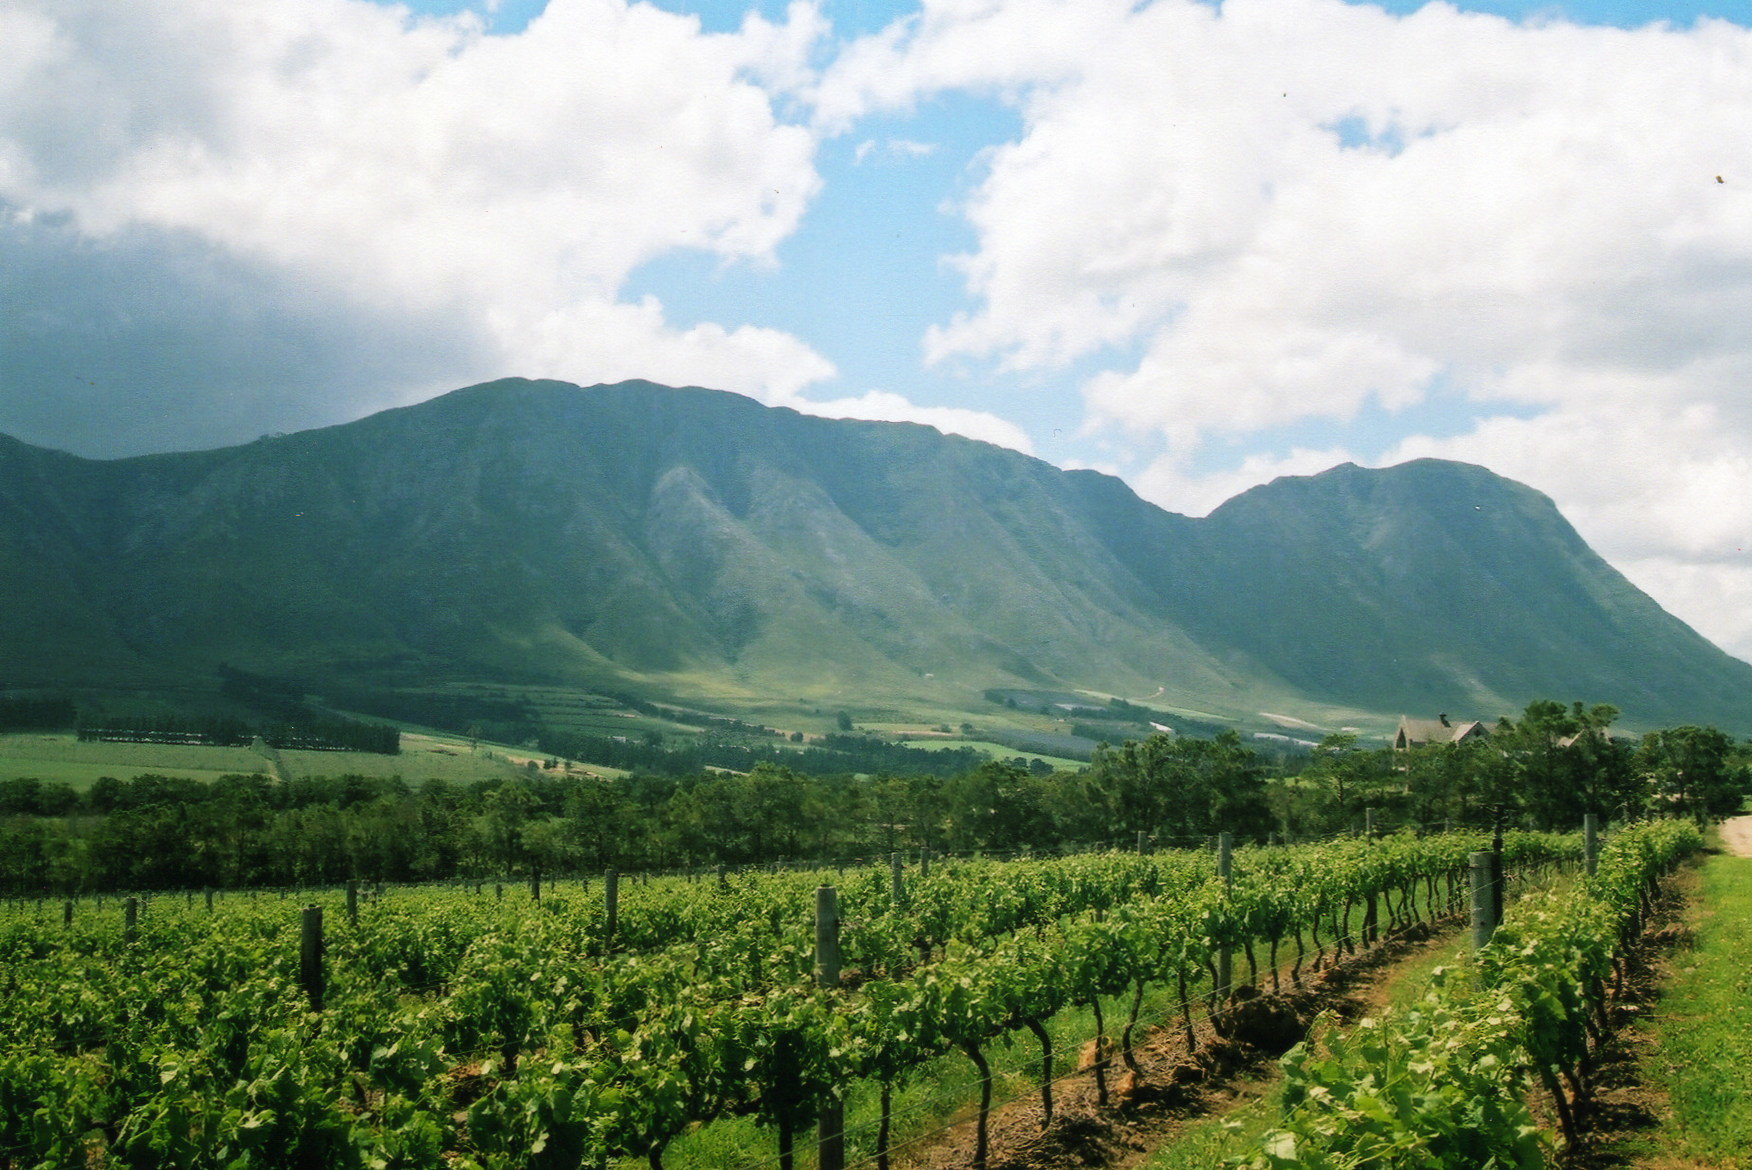 Discover the wine farms in the Hemel-en-Aarde wine region